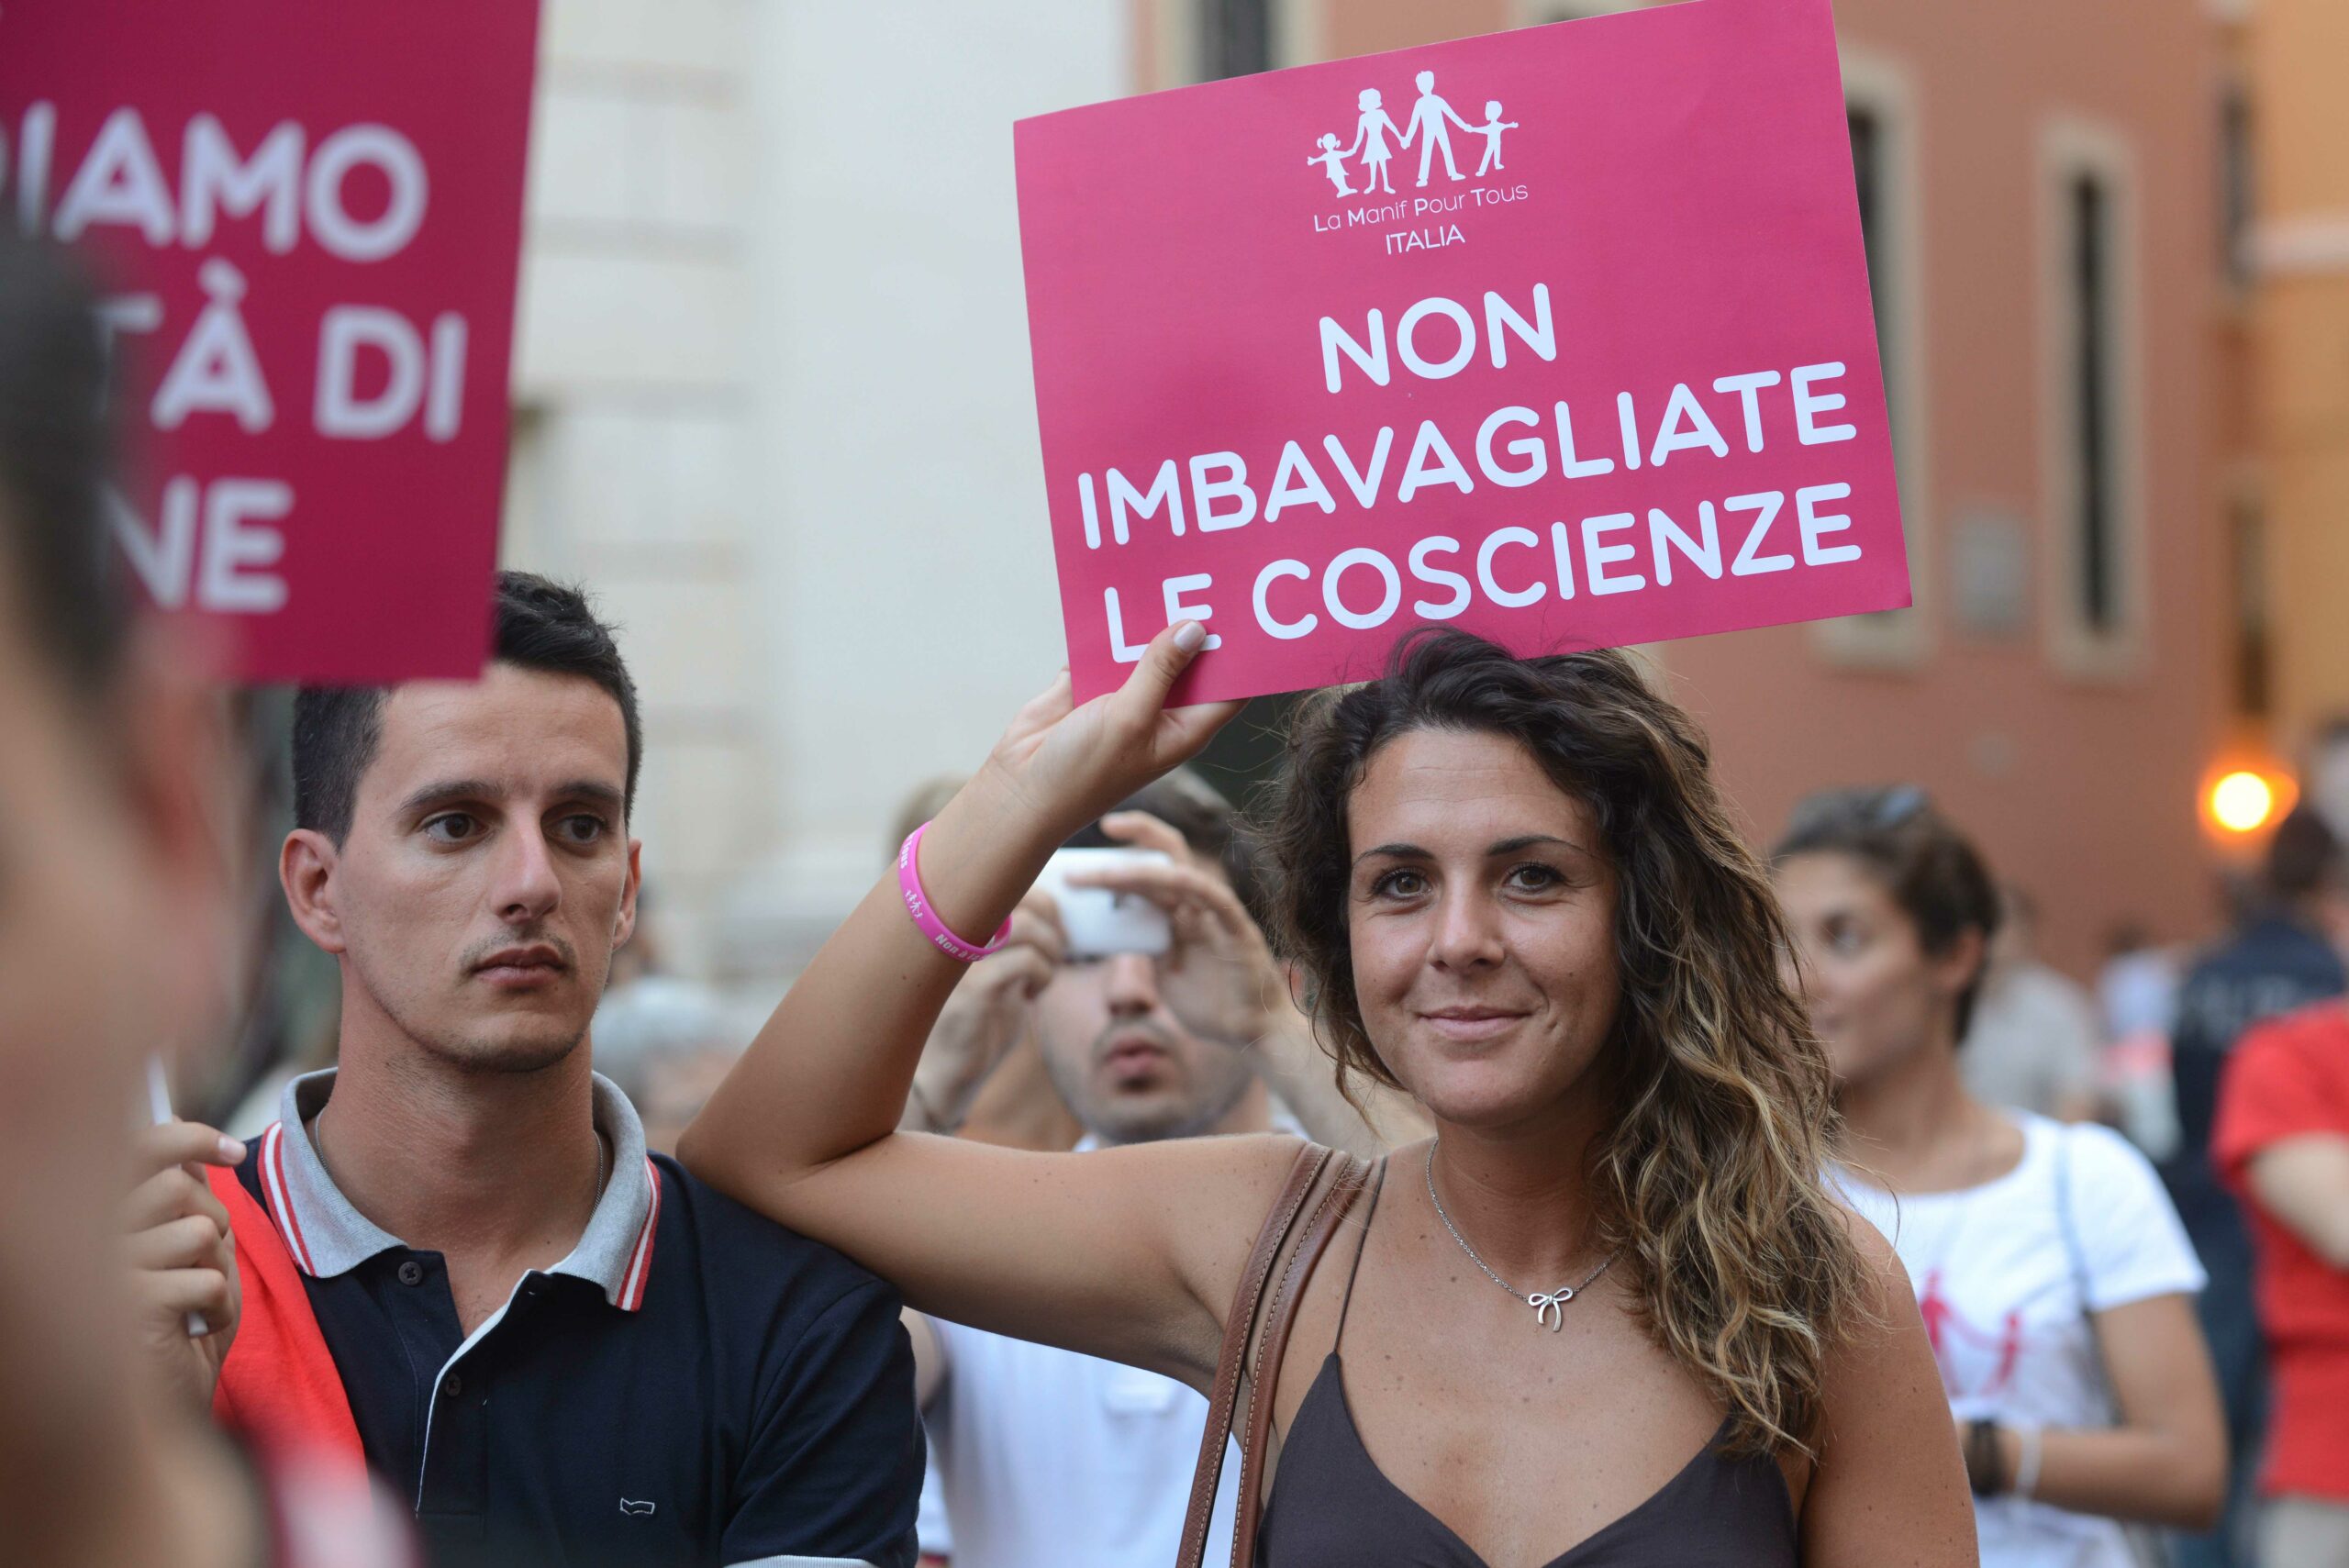 Unioni civili, La Manif Pour Tous Italia: “Il ddl Cirinnà rottama la famiglia”